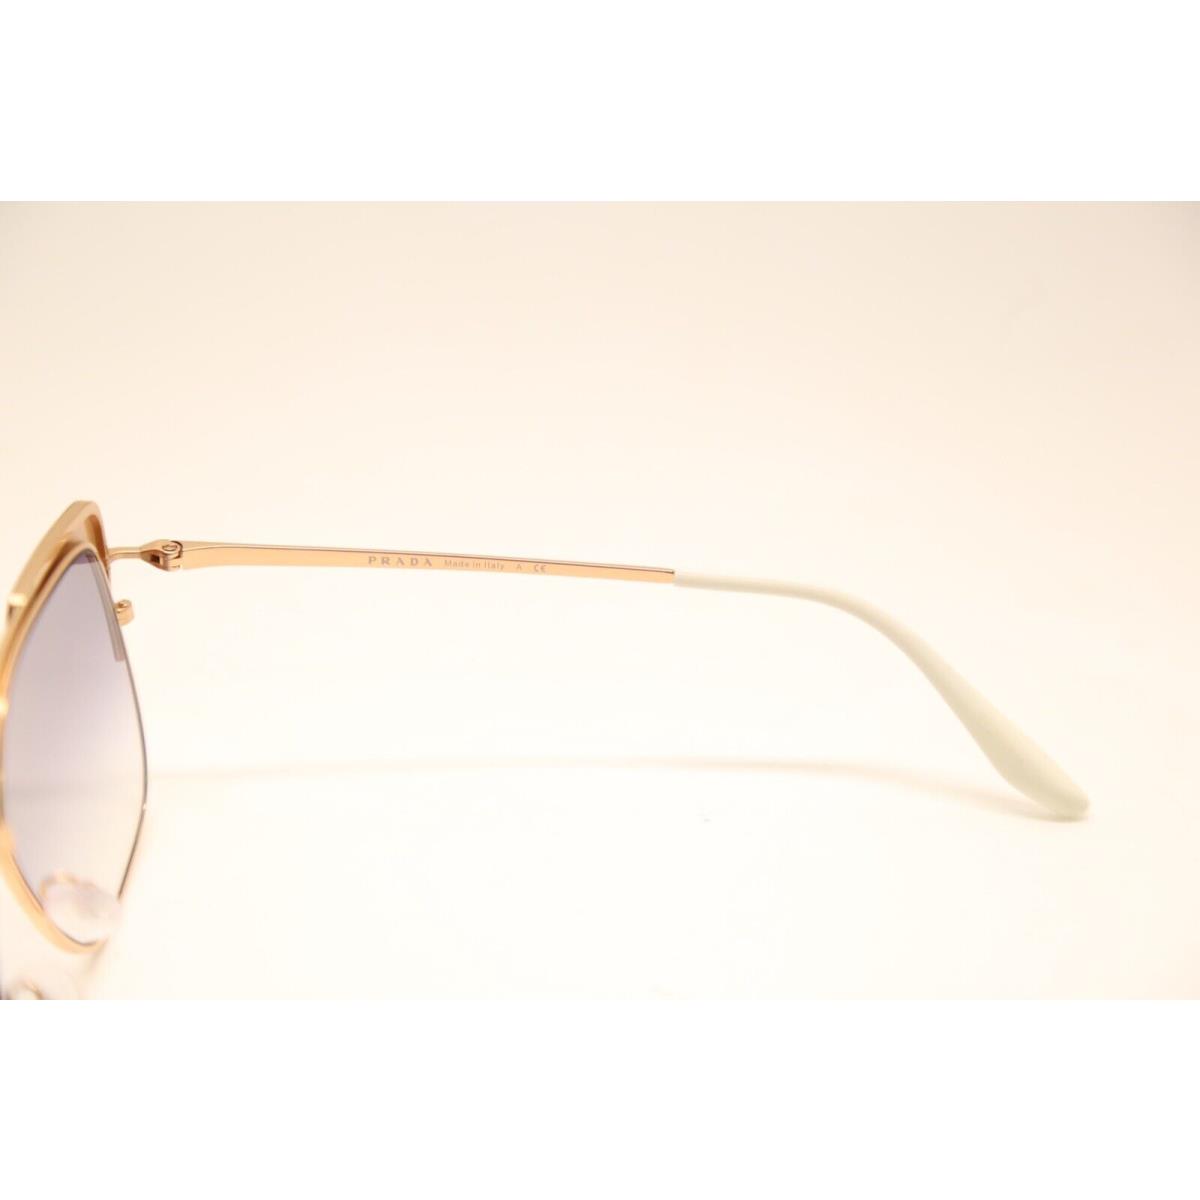 Prada sunglasses SPR - Gold/Burgundy Frame, Blue Lens 3